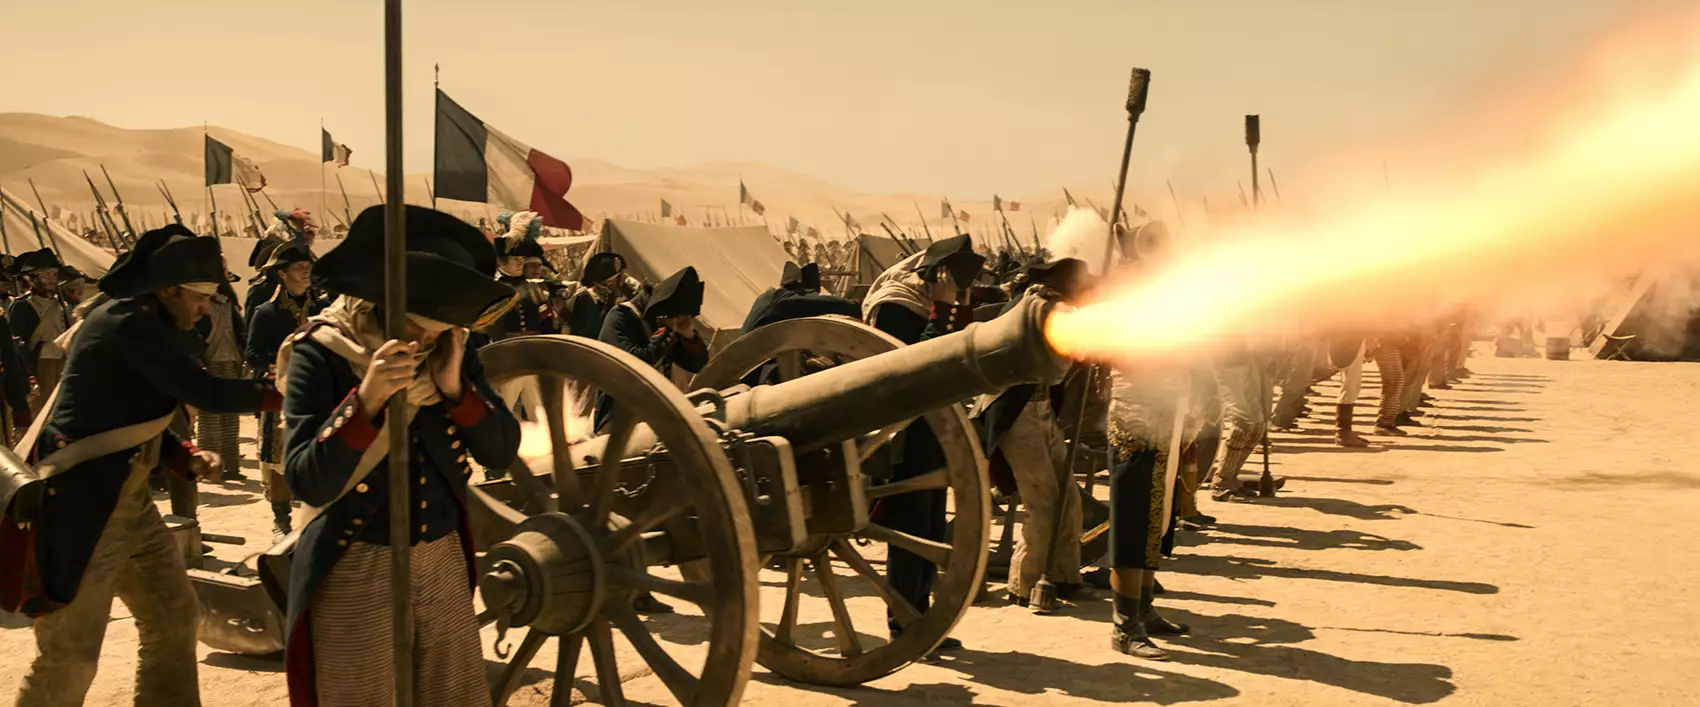 Filmowy kunszt Dariusza Wolskiego w "Napoleon" Autorstwa Ridleya Scotta